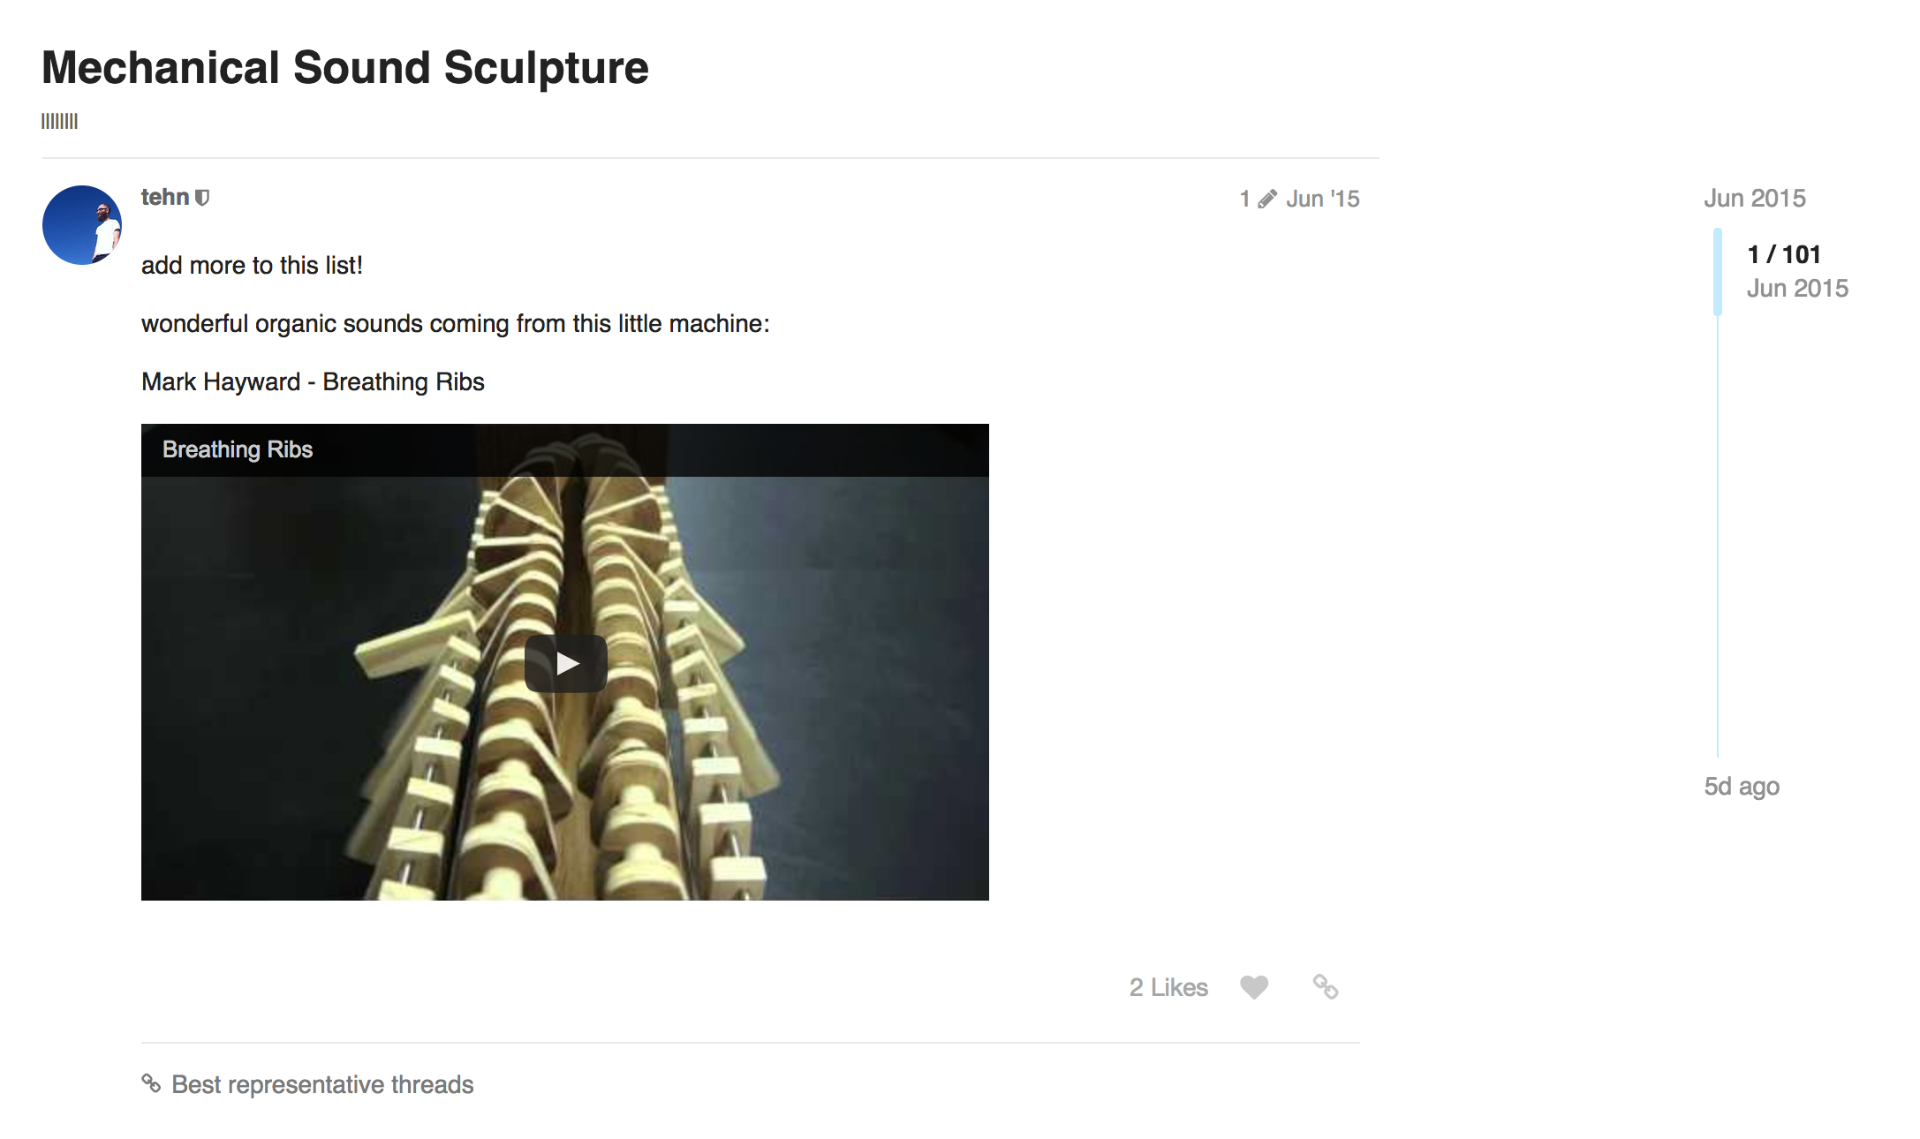 Thread about Mechanical Sound Sculpture